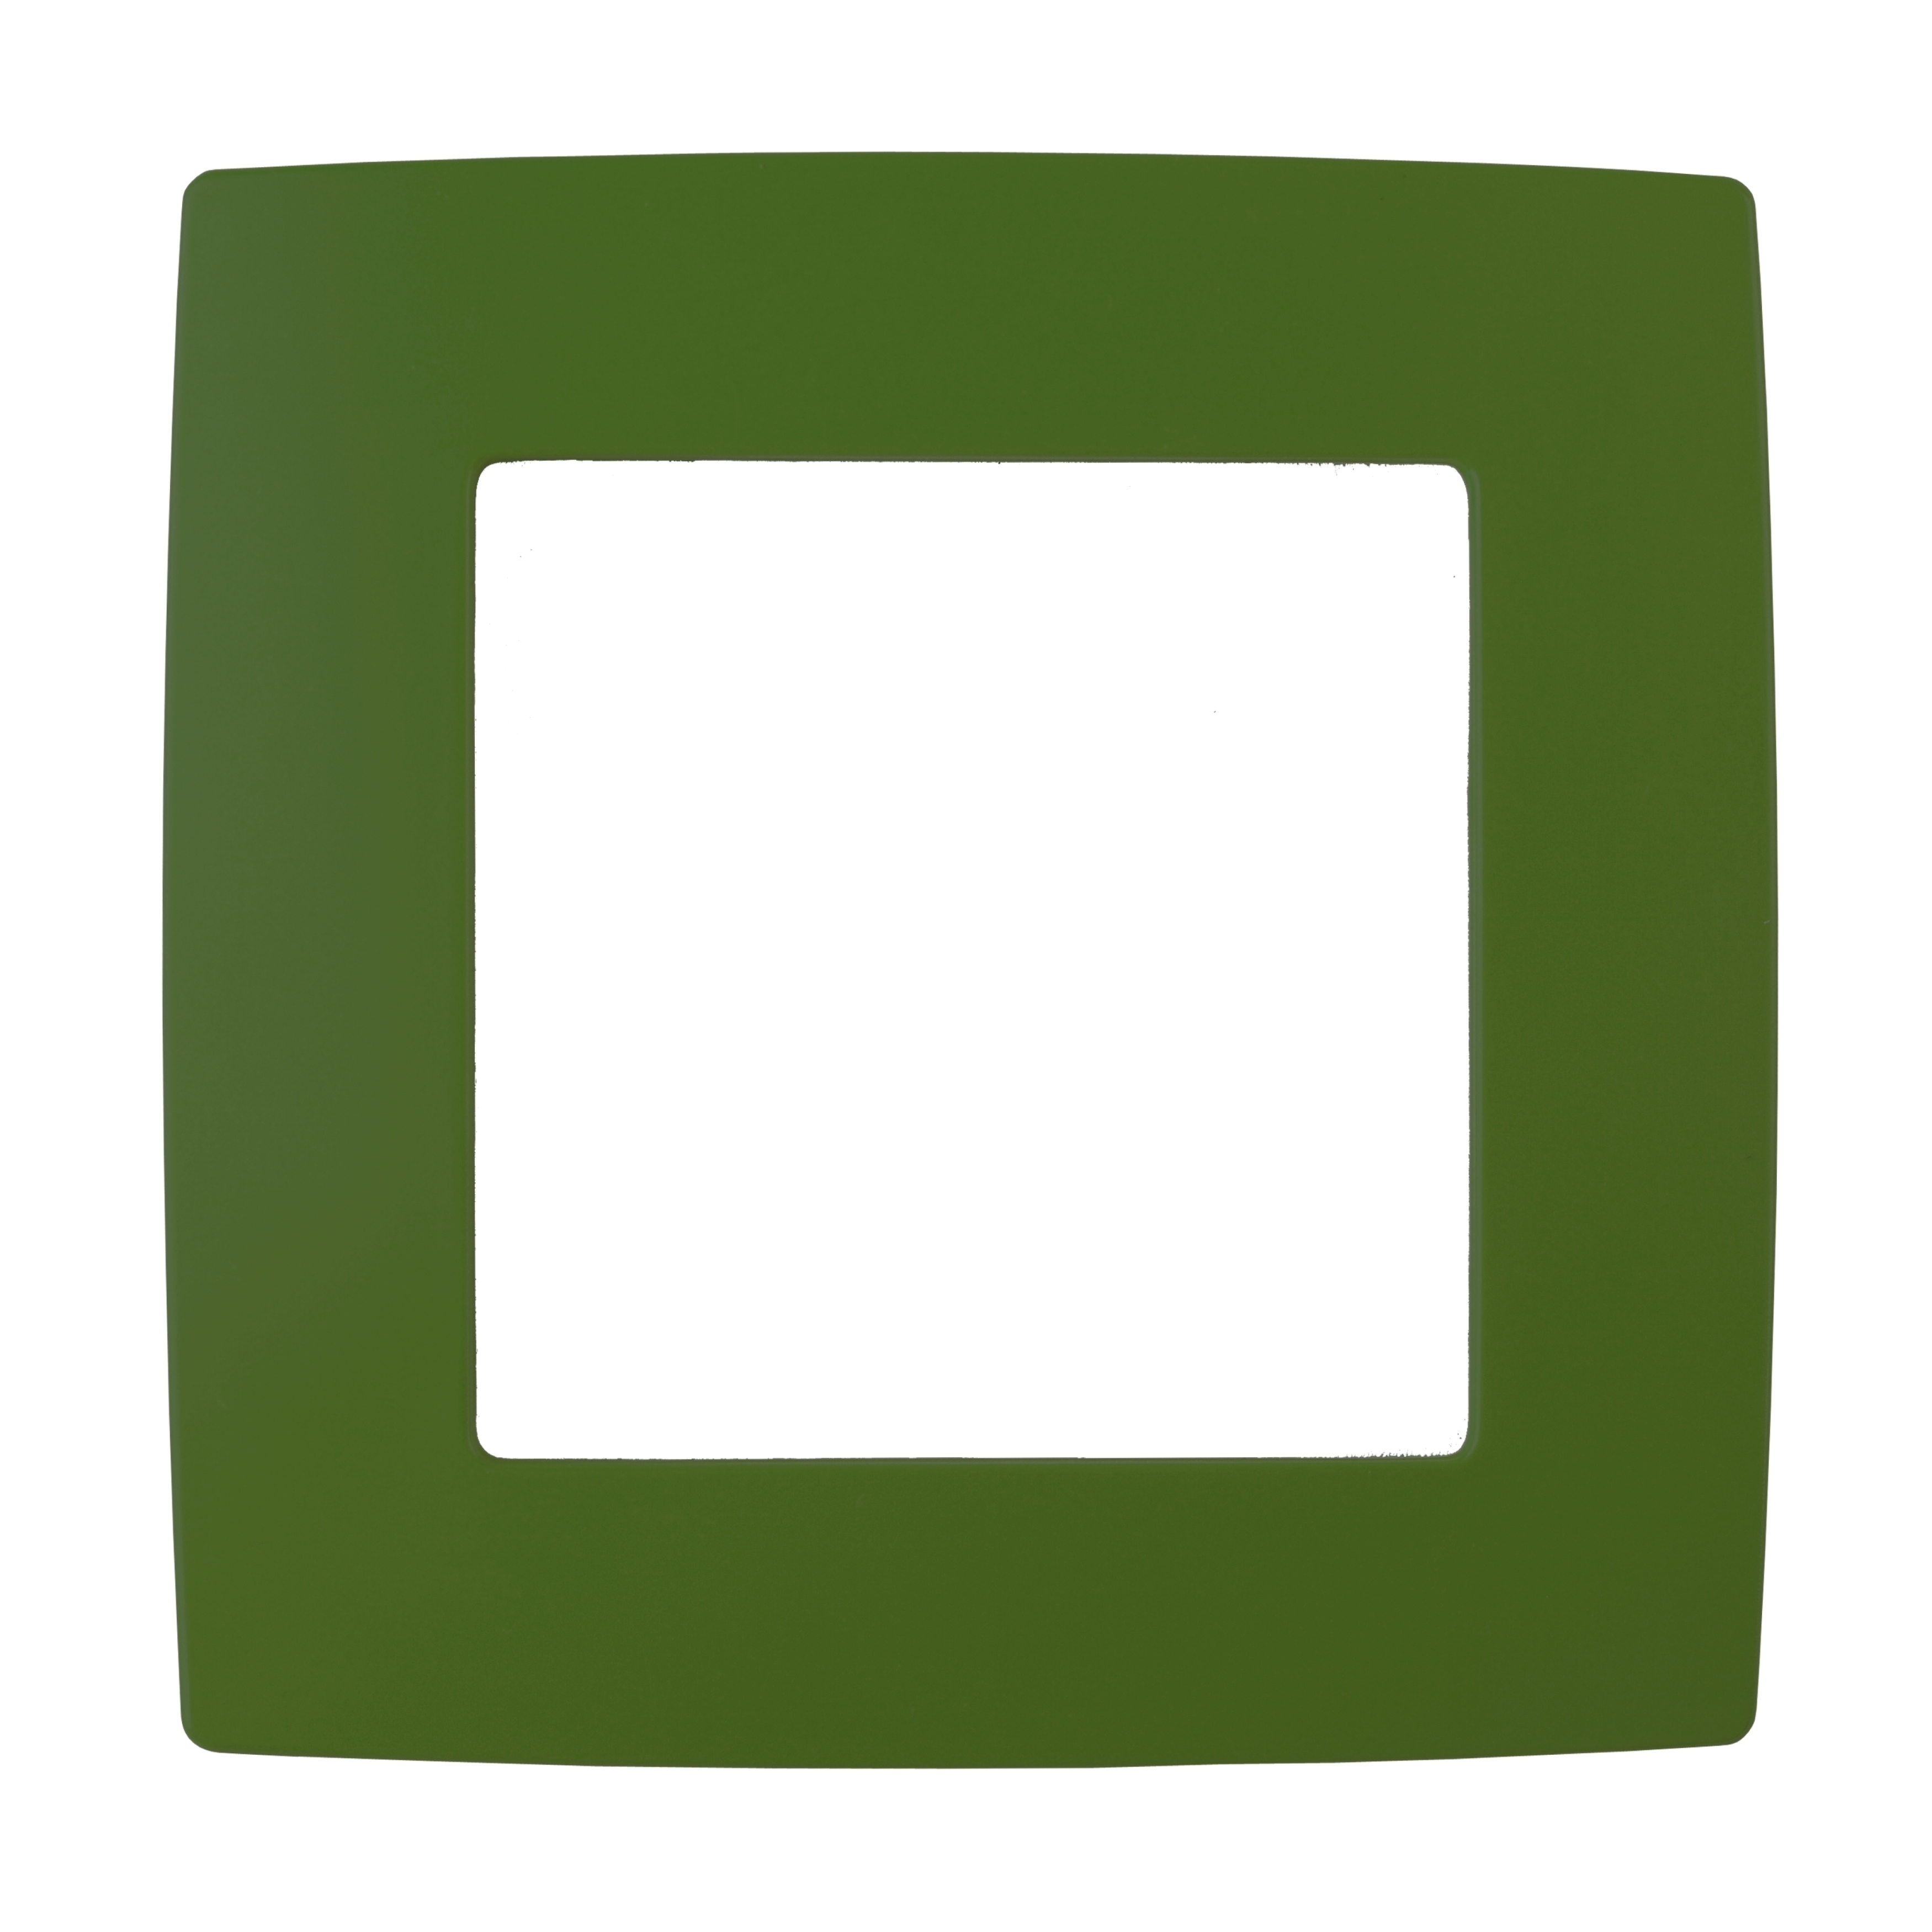 12-5001-27 ЭРА Рамка на 1 пост, Эра12, зелёный (20/200/5000)